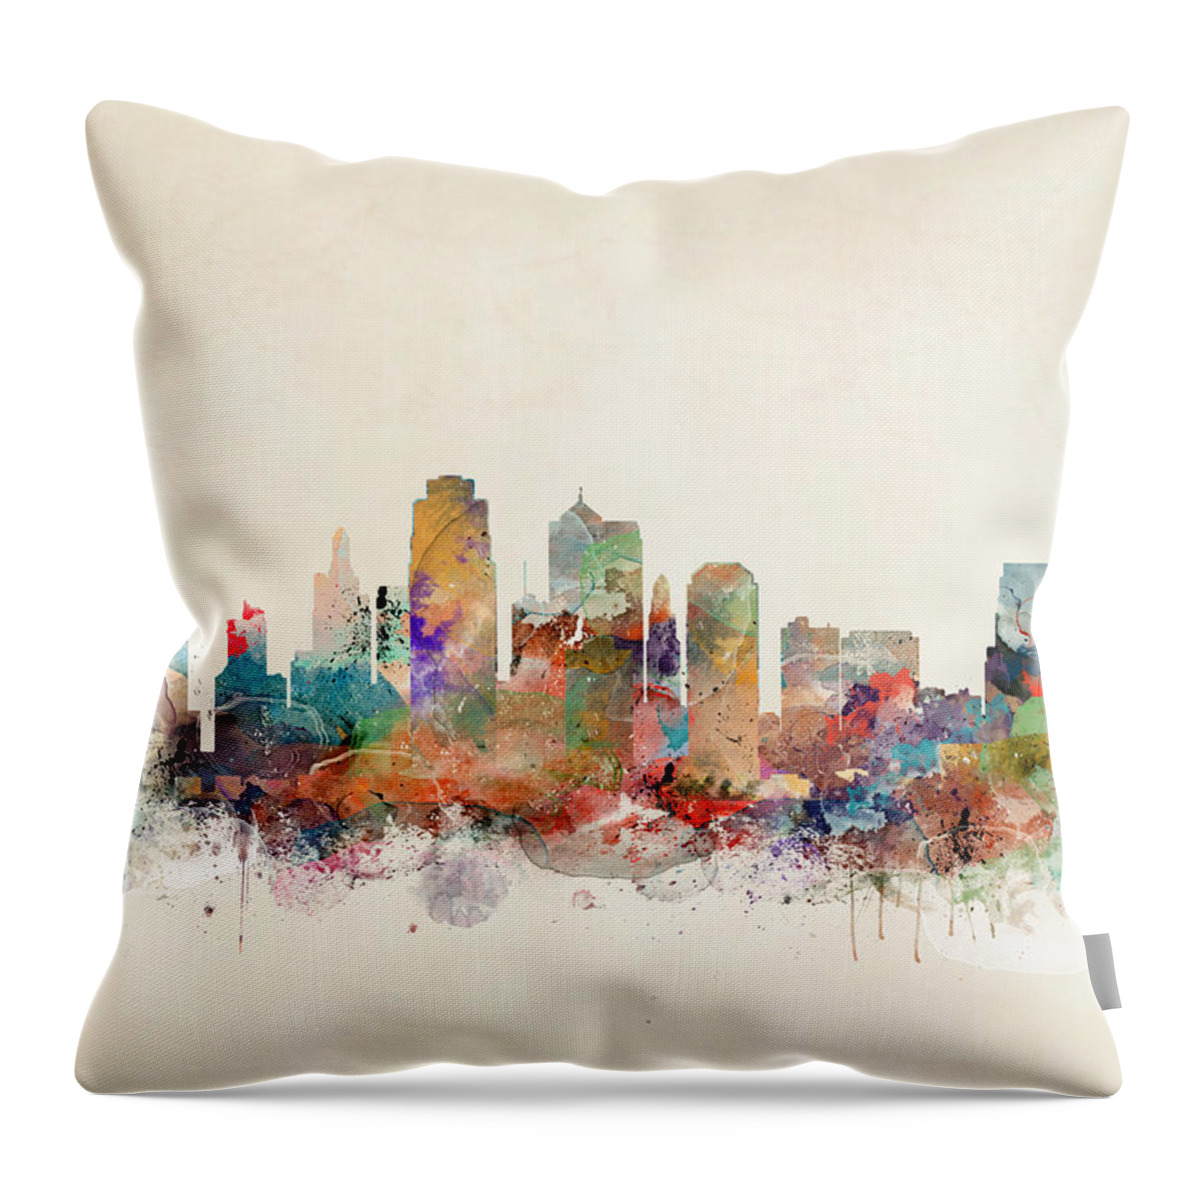 Kansas City Missouri Throw Pillow featuring the painting Kansas City Skyline by Bri Buckley